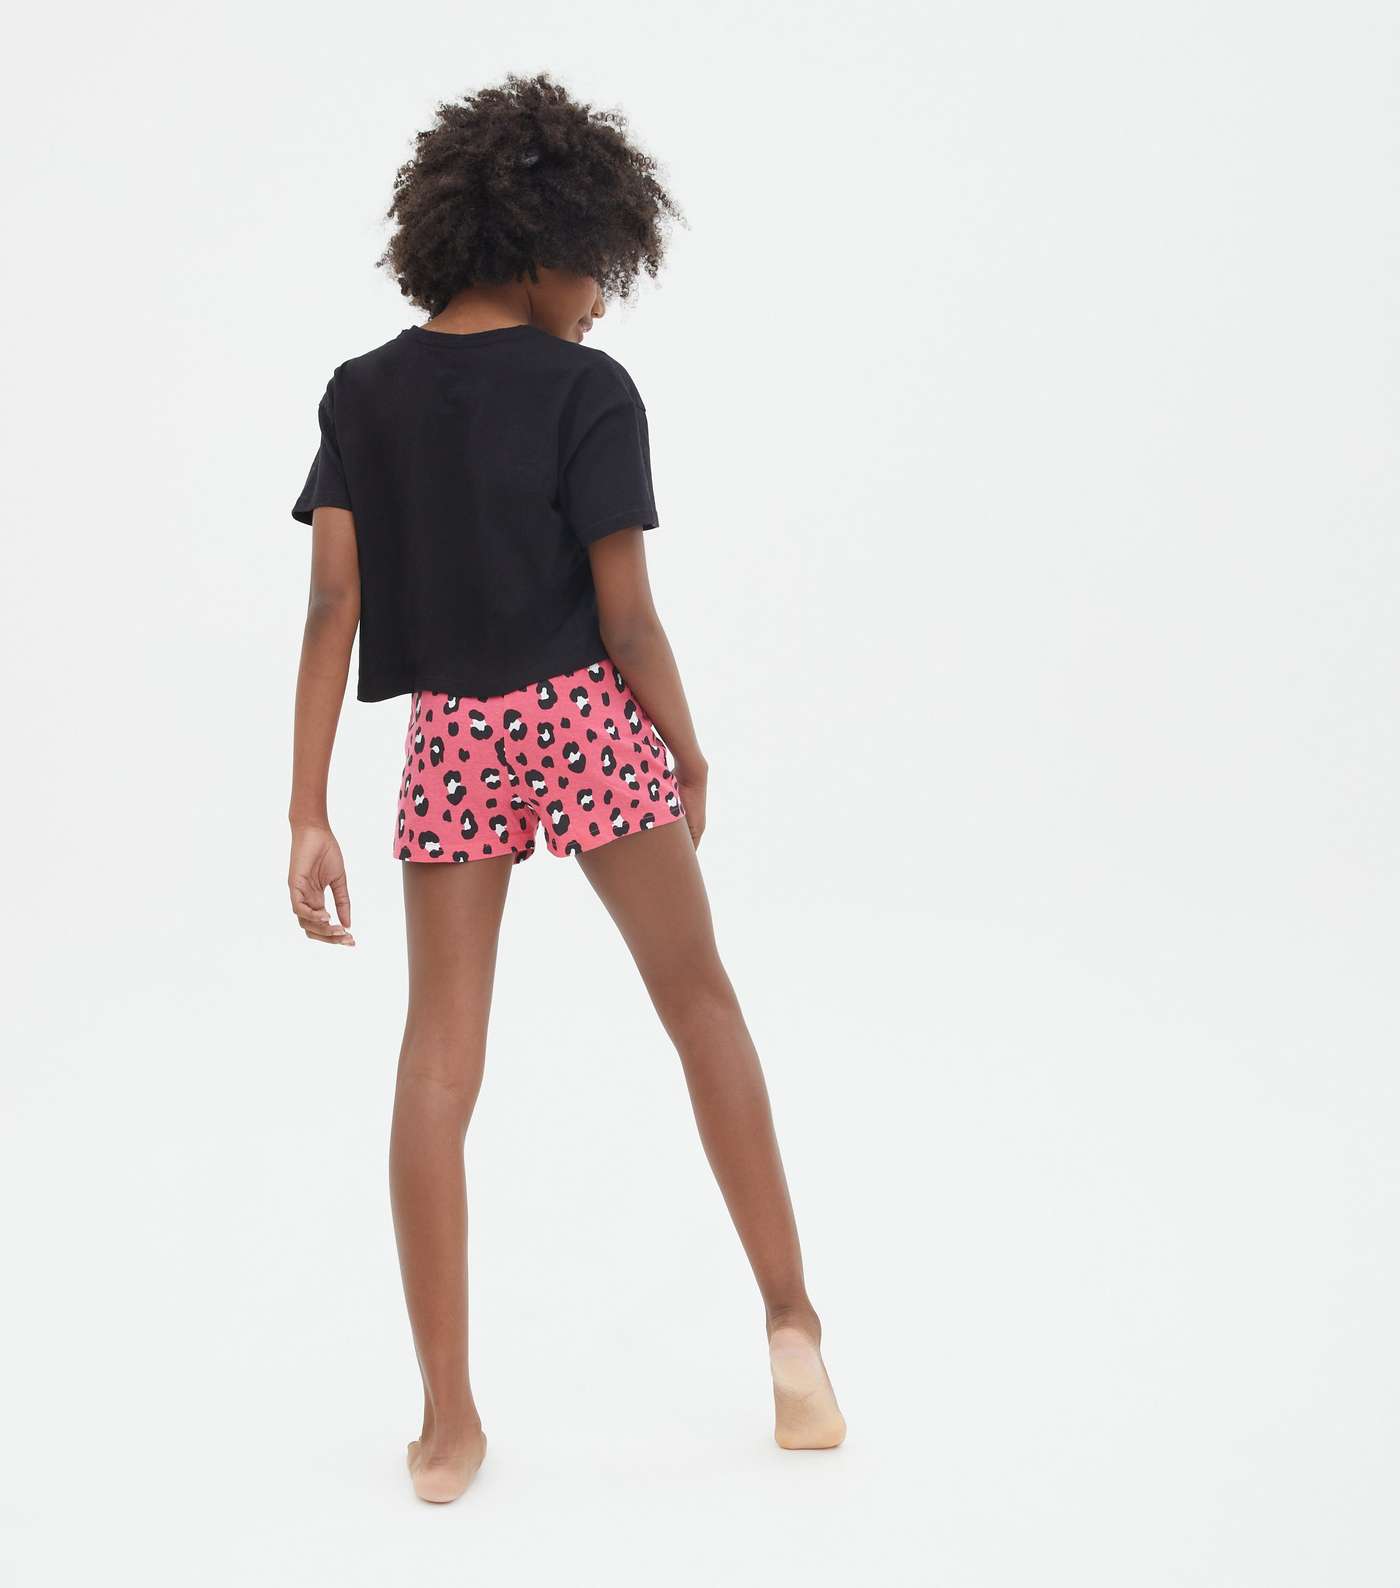 Girls 2 Pack Black Short Pyjama Sets with Leopard Print Image 4